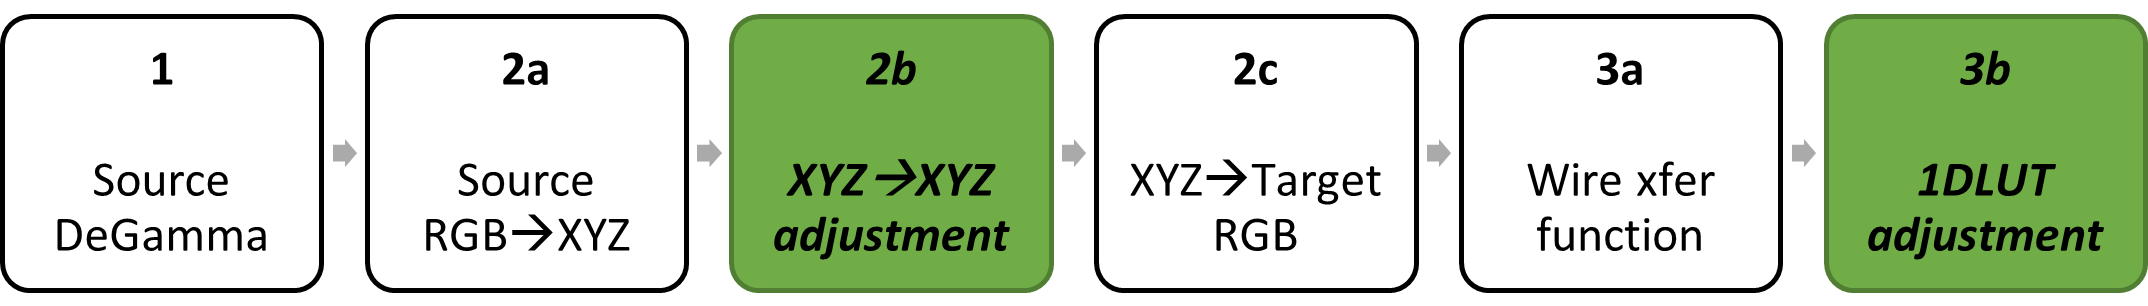 diagrama de bloques: degamma de origen; matriz de color descomponida en rgb de origen a XYZ, XYZ a XYZ y XYZ a RGB de destino; target regamma descomponido en la función de transferencia bancaria, ajuste 1DLUT